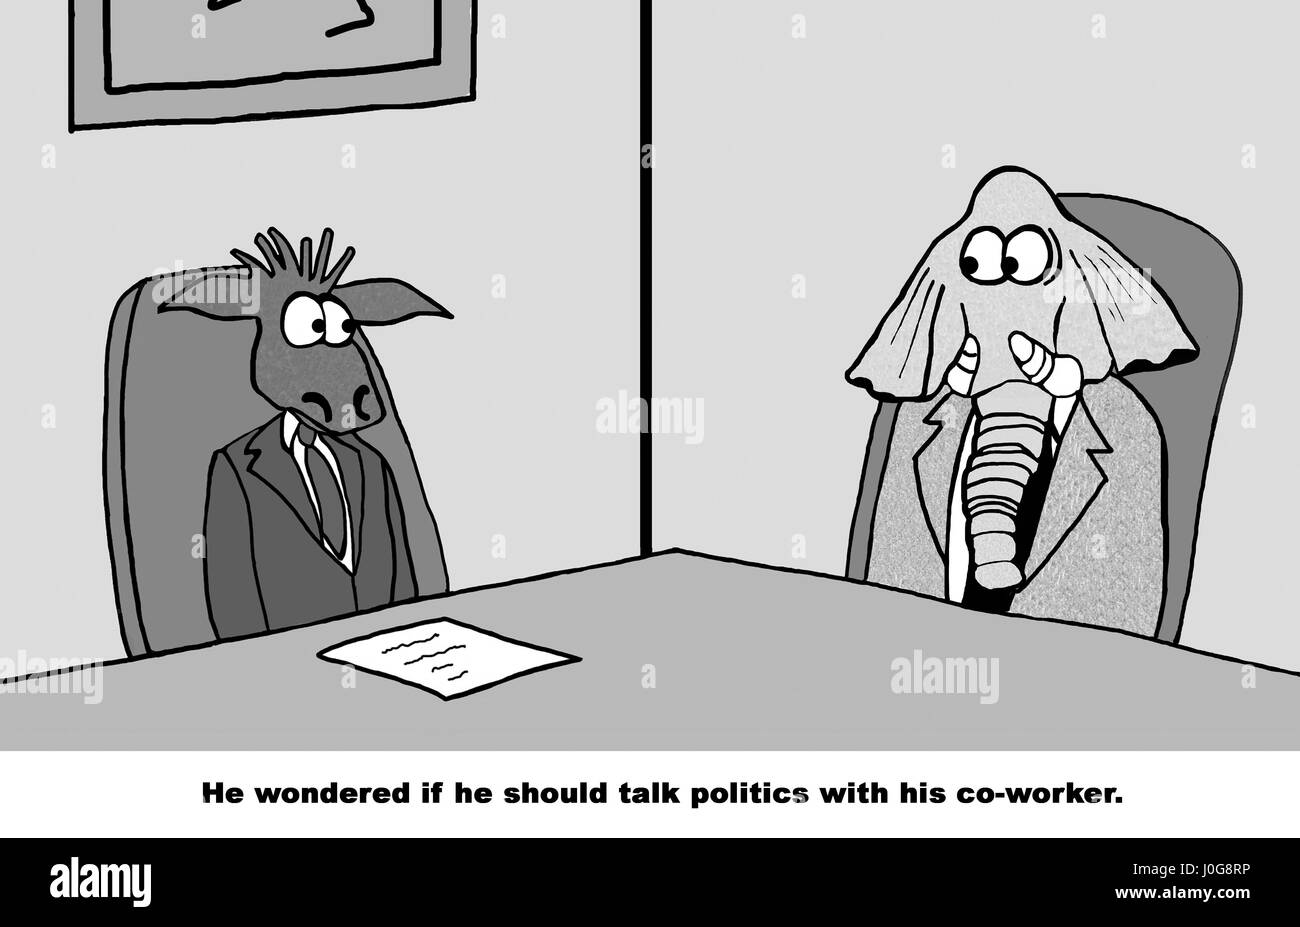 Business tebeo sobre un liberal y un conservador preguntándose si deben hablar de política en el trabajo. Foto de stock